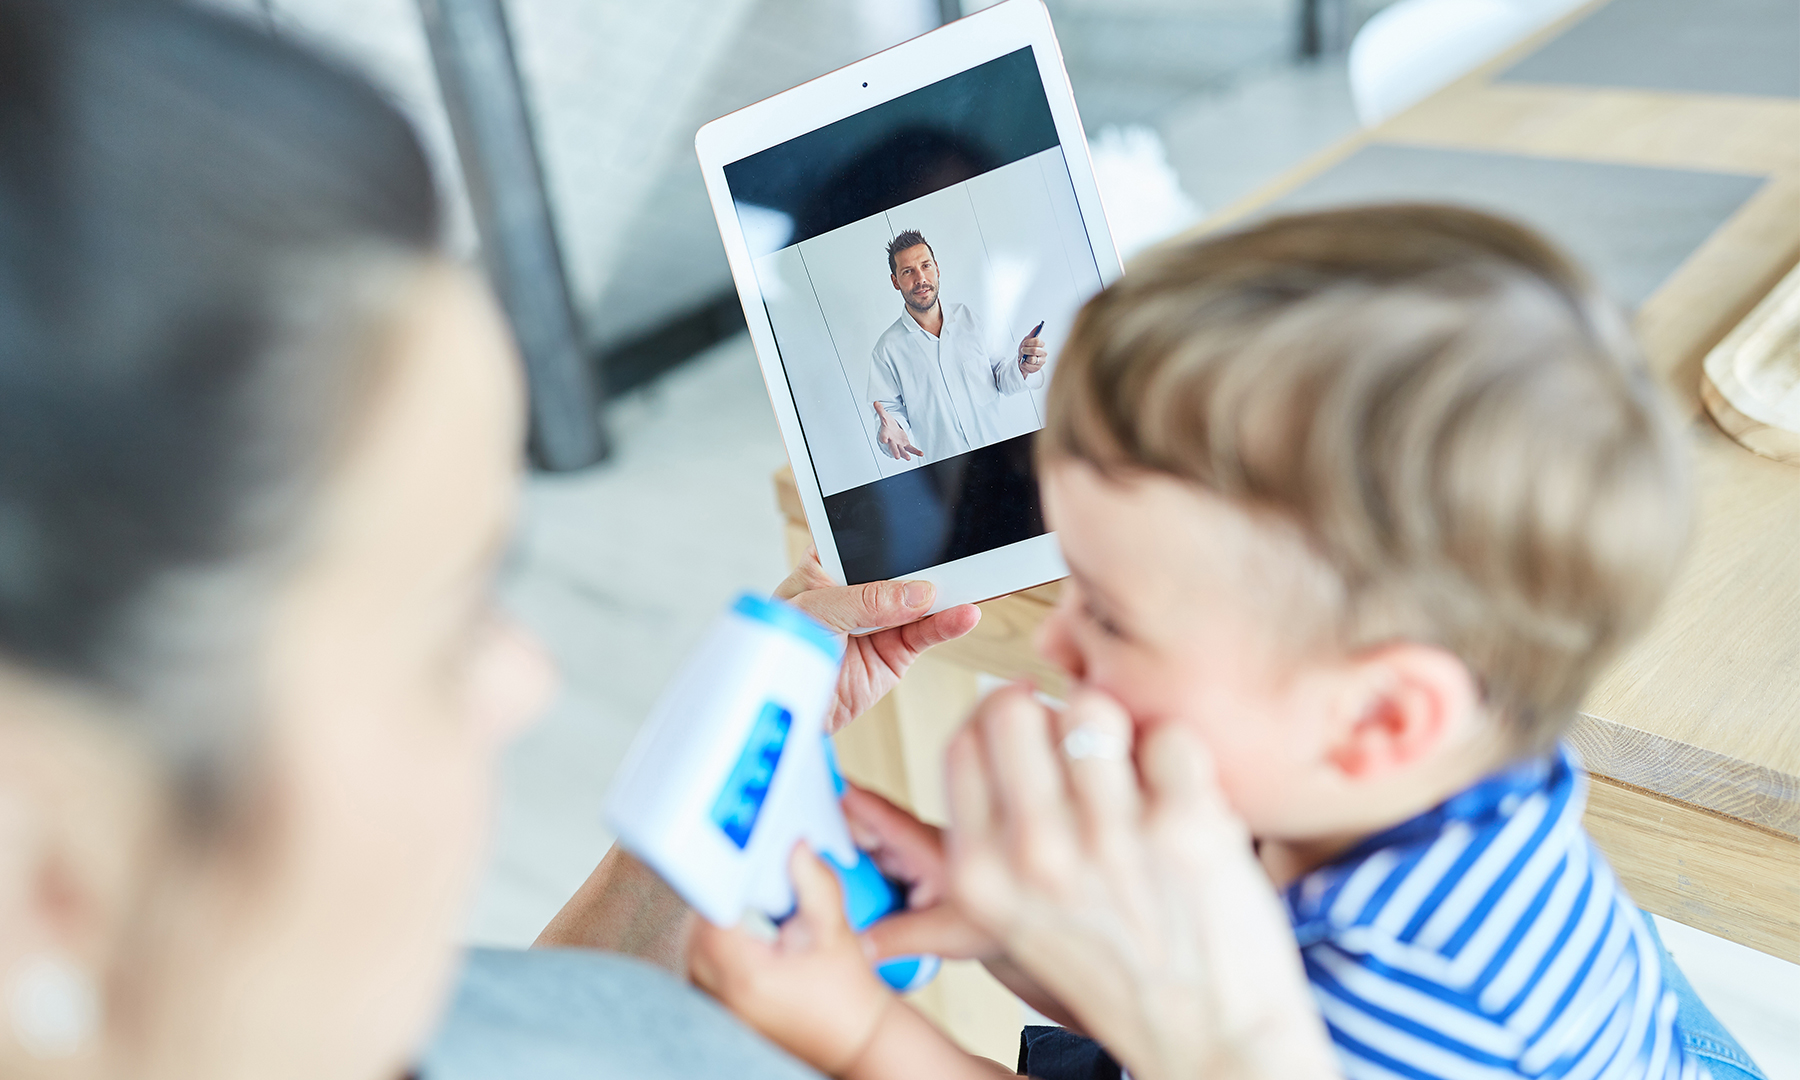 Mutter mit Kleinkind hat ein Tablet in der Hand auf dem ein Arzt in der Videosprechstunde zu sehen ist.